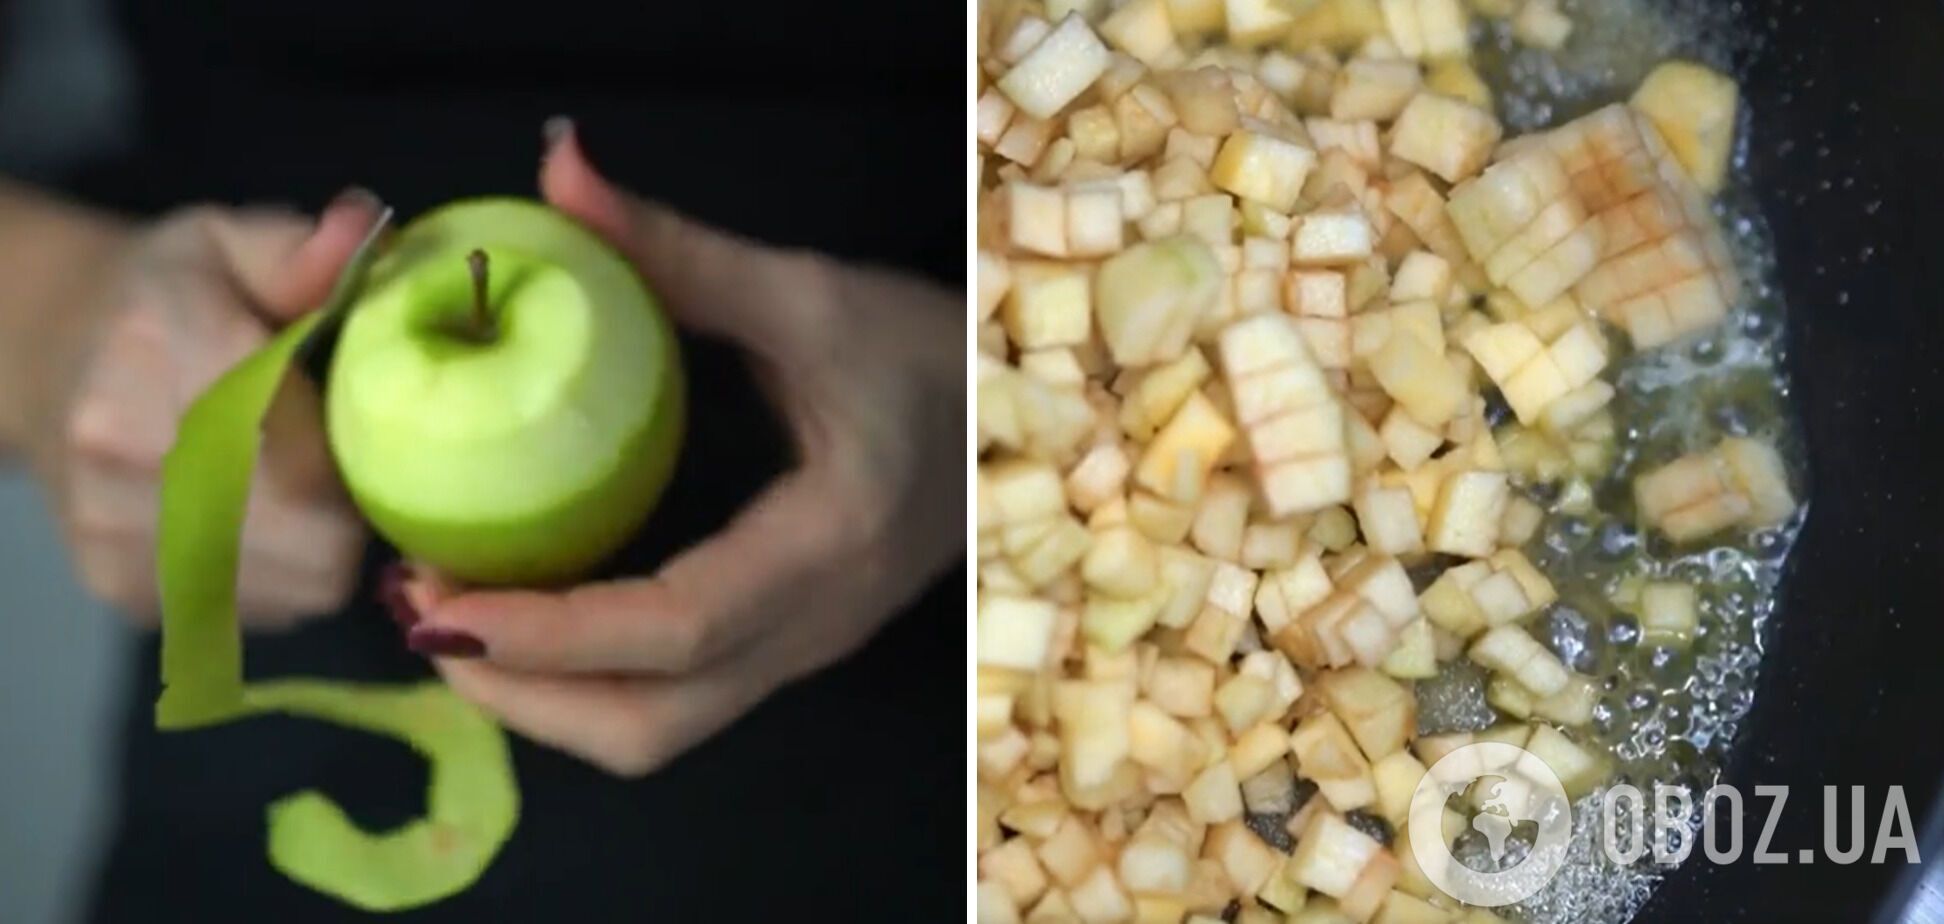 Какие яблоки выбрать для шарлотки